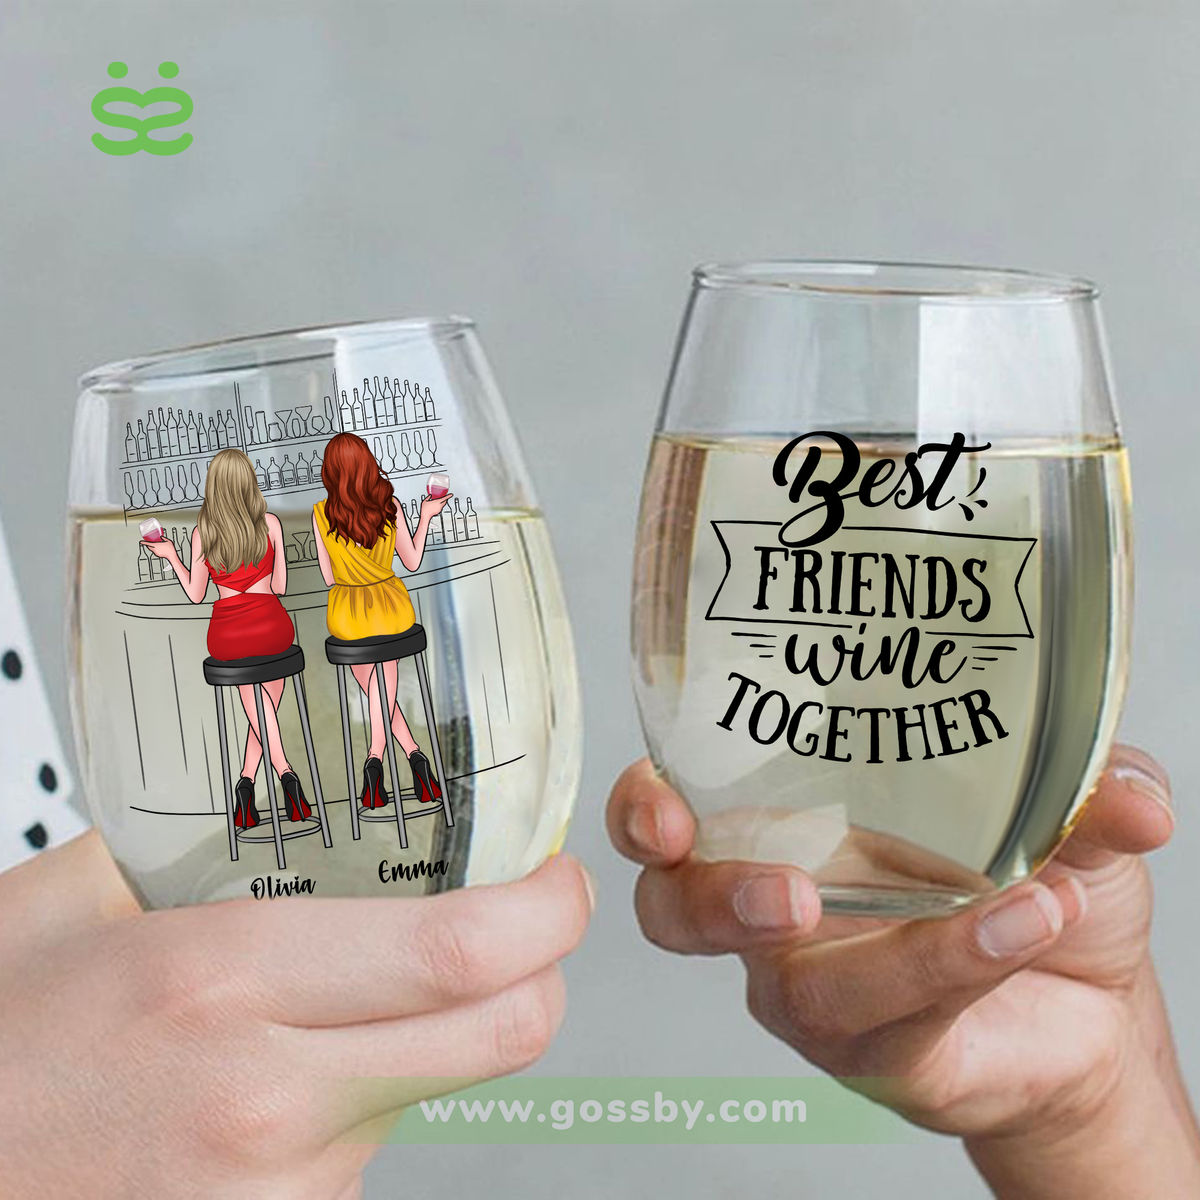 Wine Glass - Bestfriends wine together